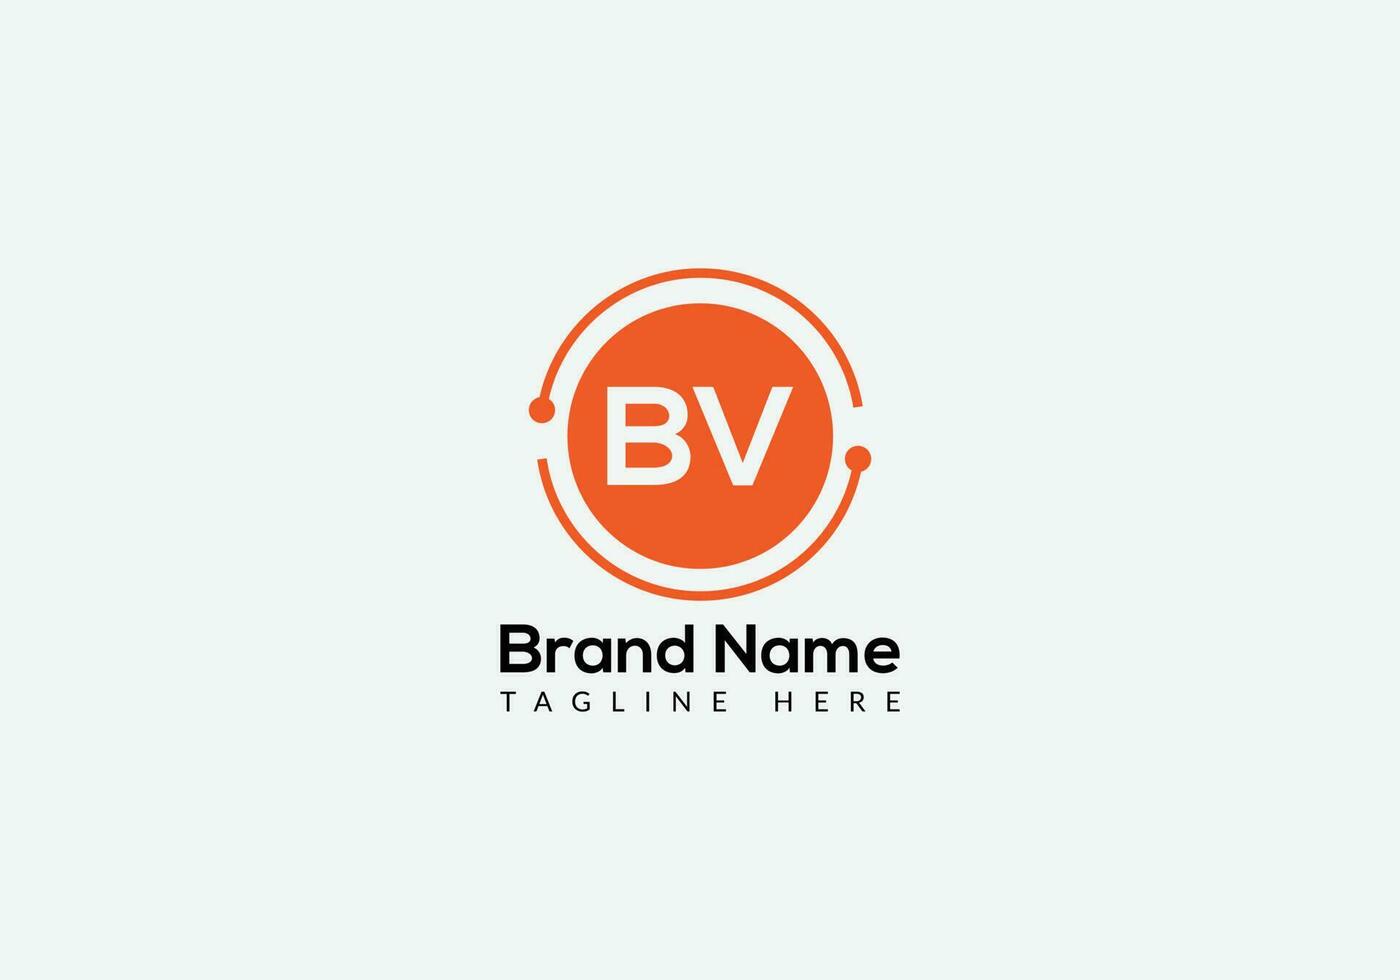 lettre bv abstraite création de logo de lettres initiales modernes vecteur